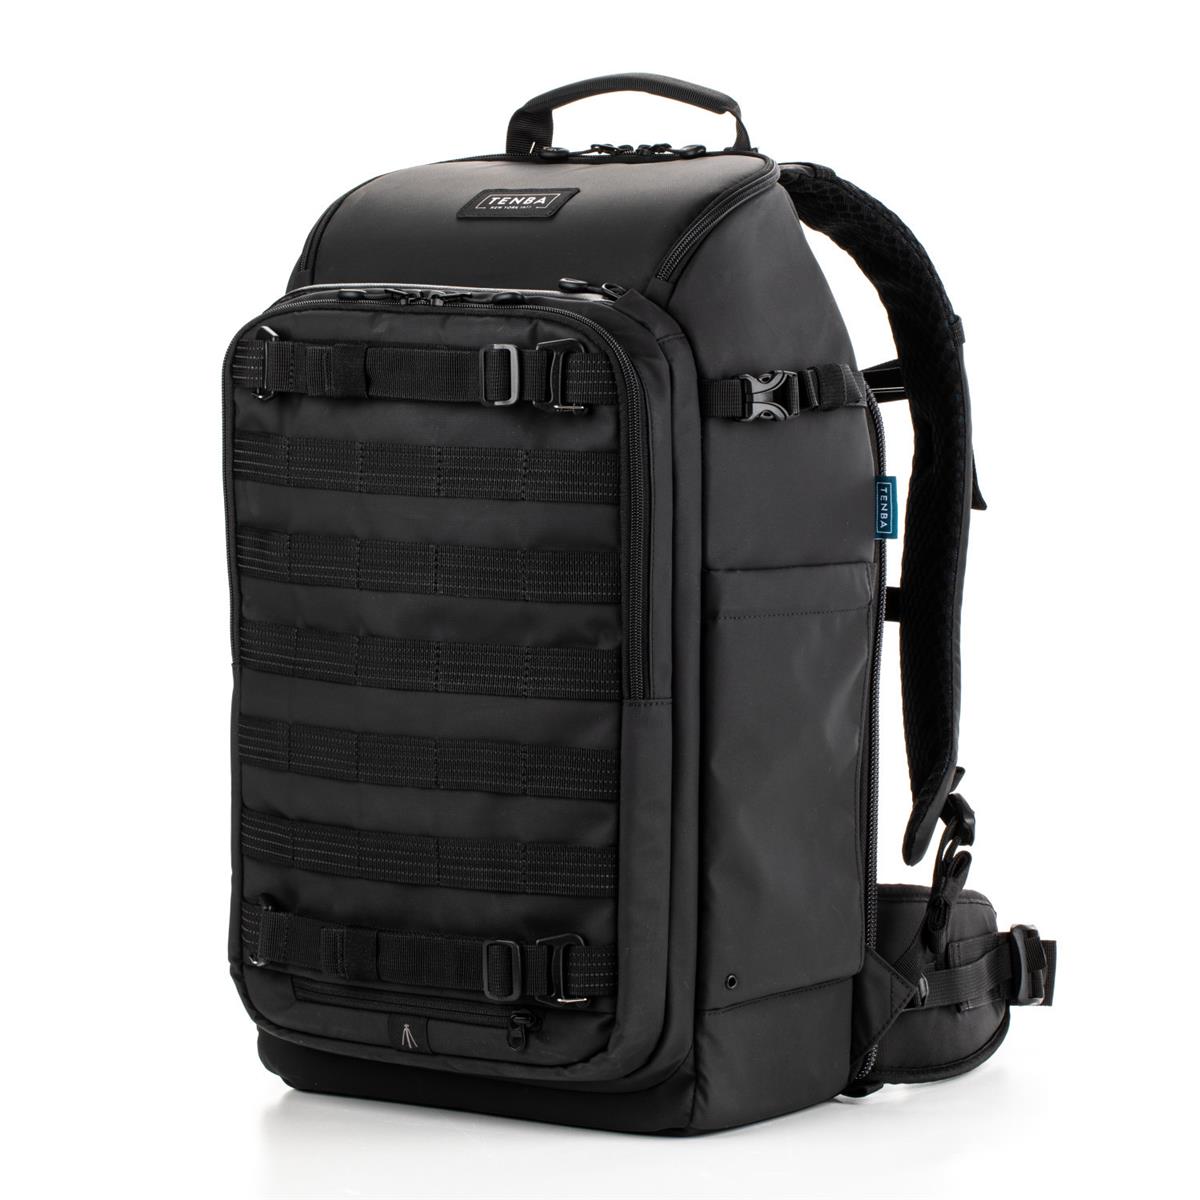 Рюкзак Tenba Axis V2 24L для камеры и ноутбука, черный #637-756